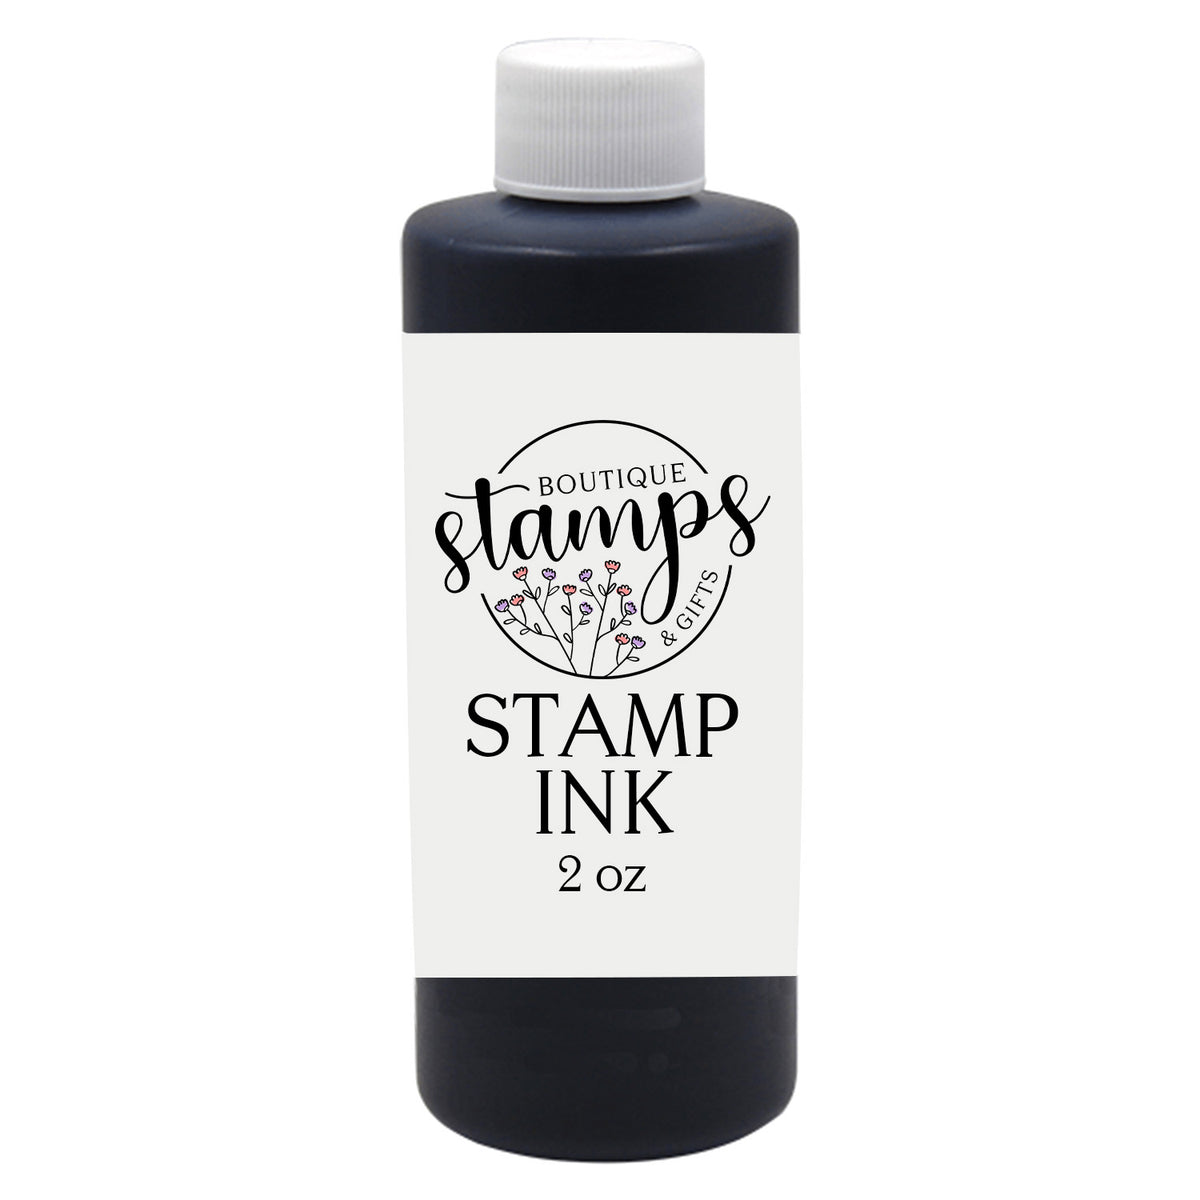 2 oz Black Stamp Ink